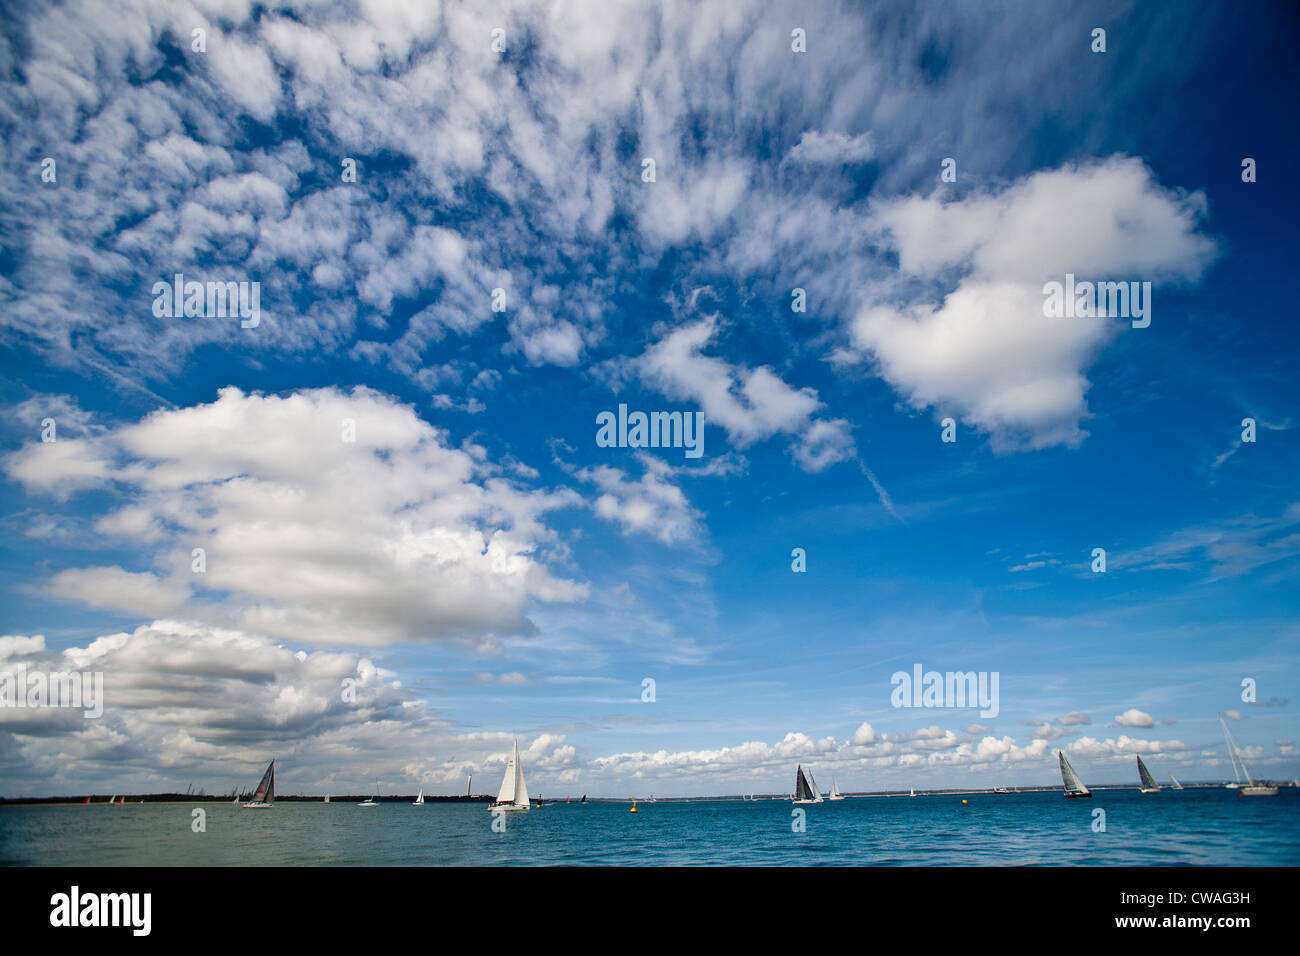 Le Solent, Yachts Course, nuages, ciel bleu, la semaine de Cowes, Cowes, île de Wight, Angleterre, Royaume-Uni, Banque D'Images